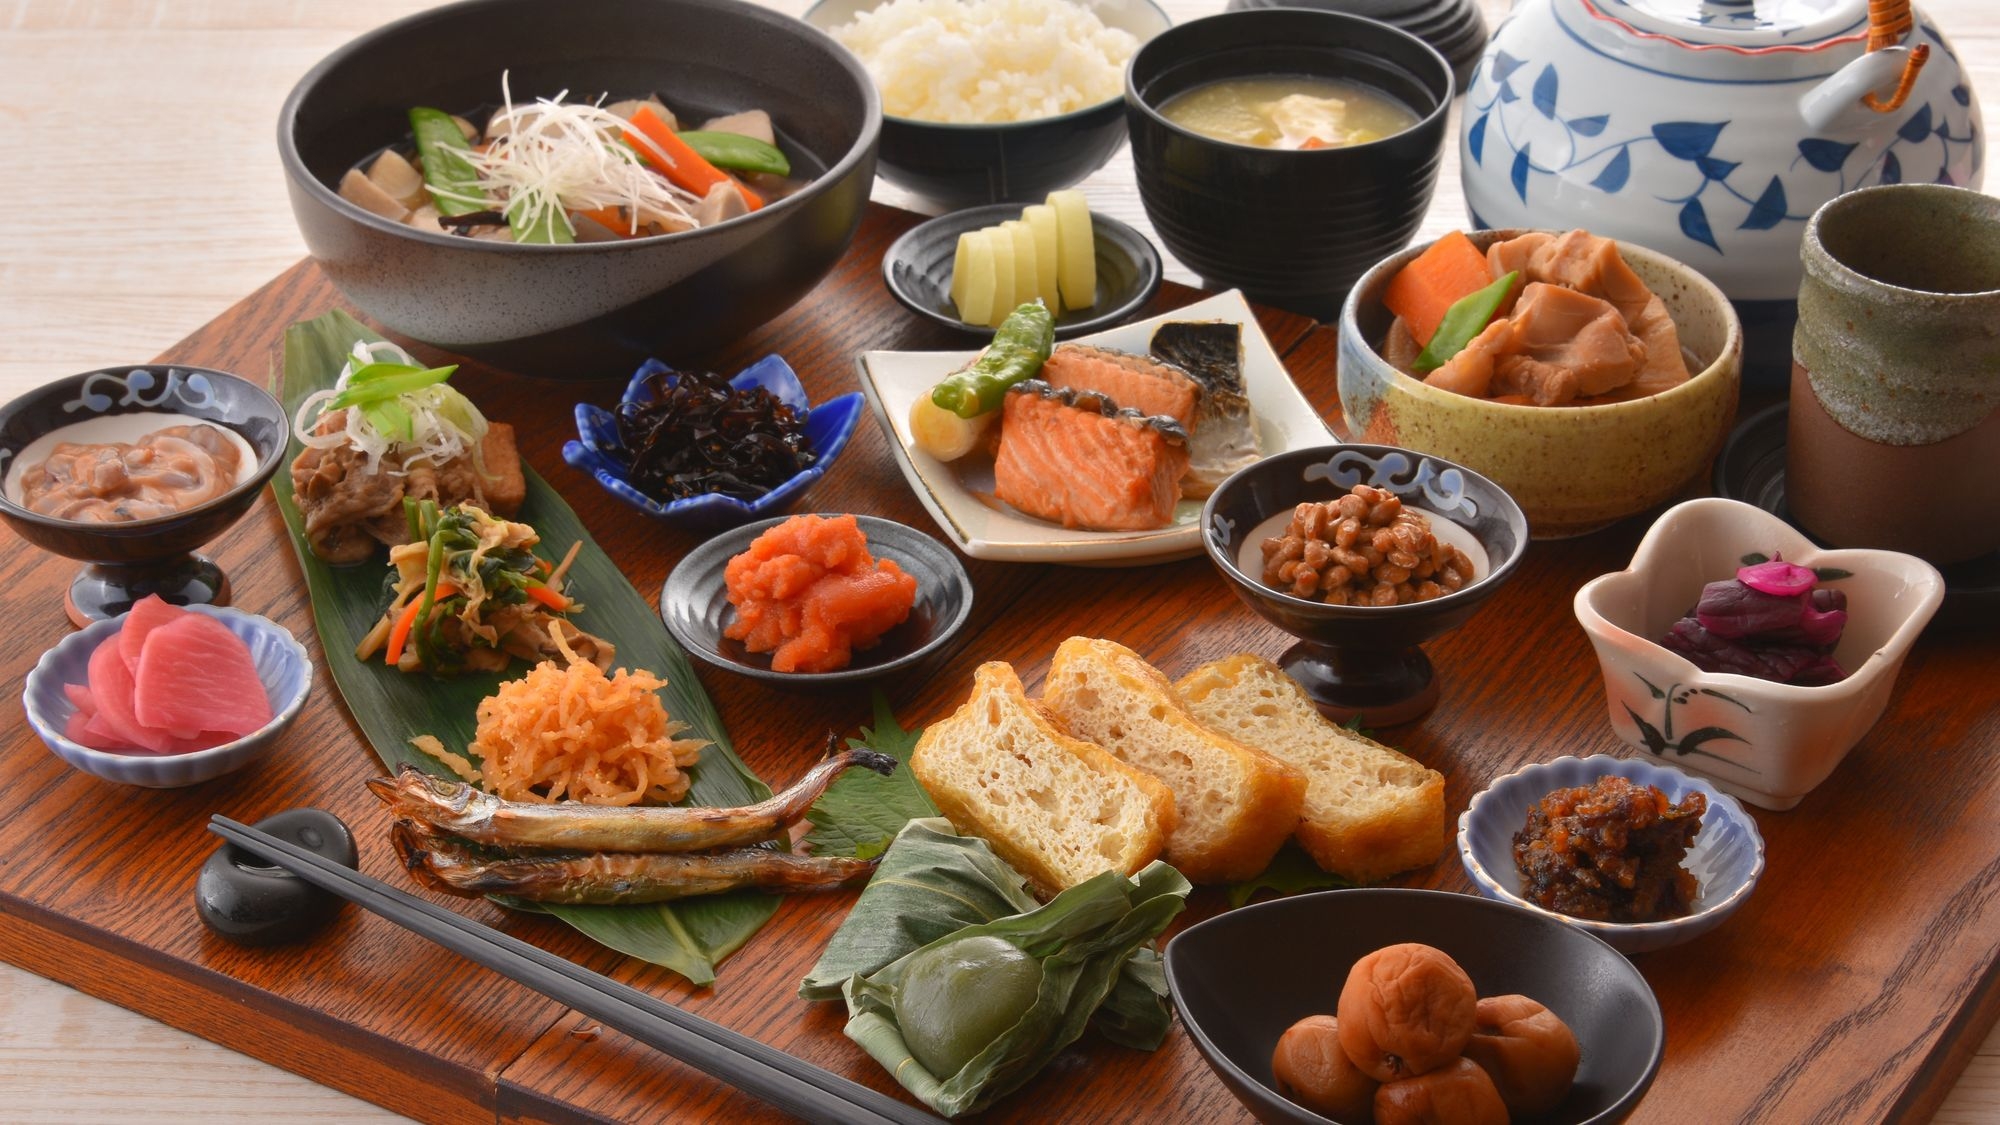 【スタンダード】■新潟駅直結■【朝食付き】お客様評価点4.6以上の朝食を是非ご賞味ください